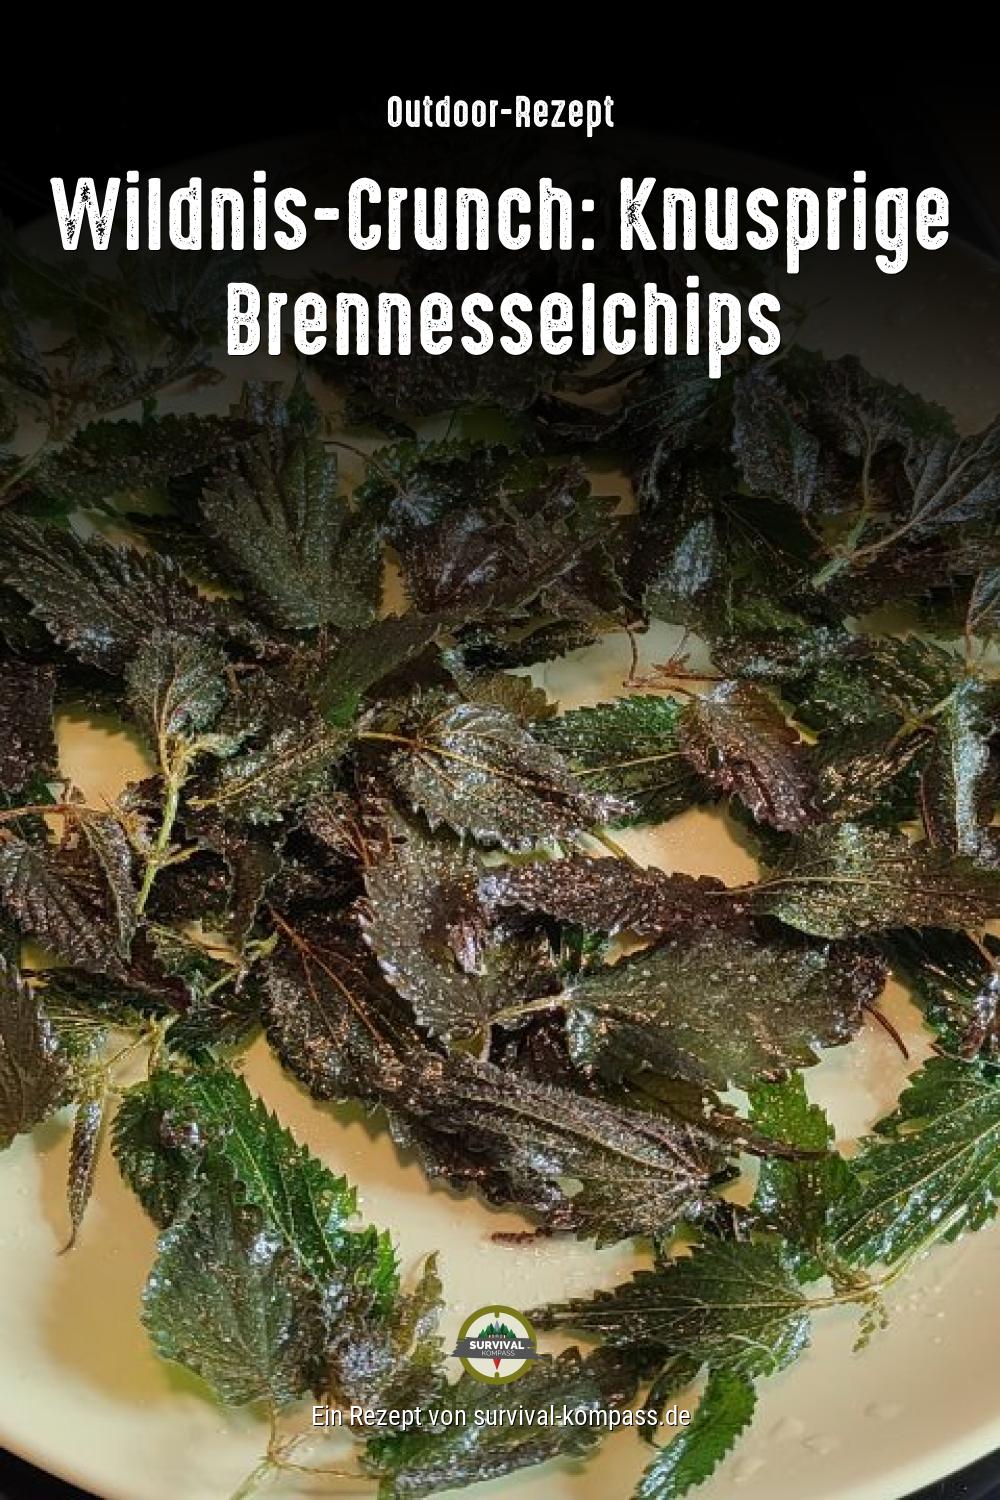 Wildnis-Crunch: Knusprige Brennesselchips